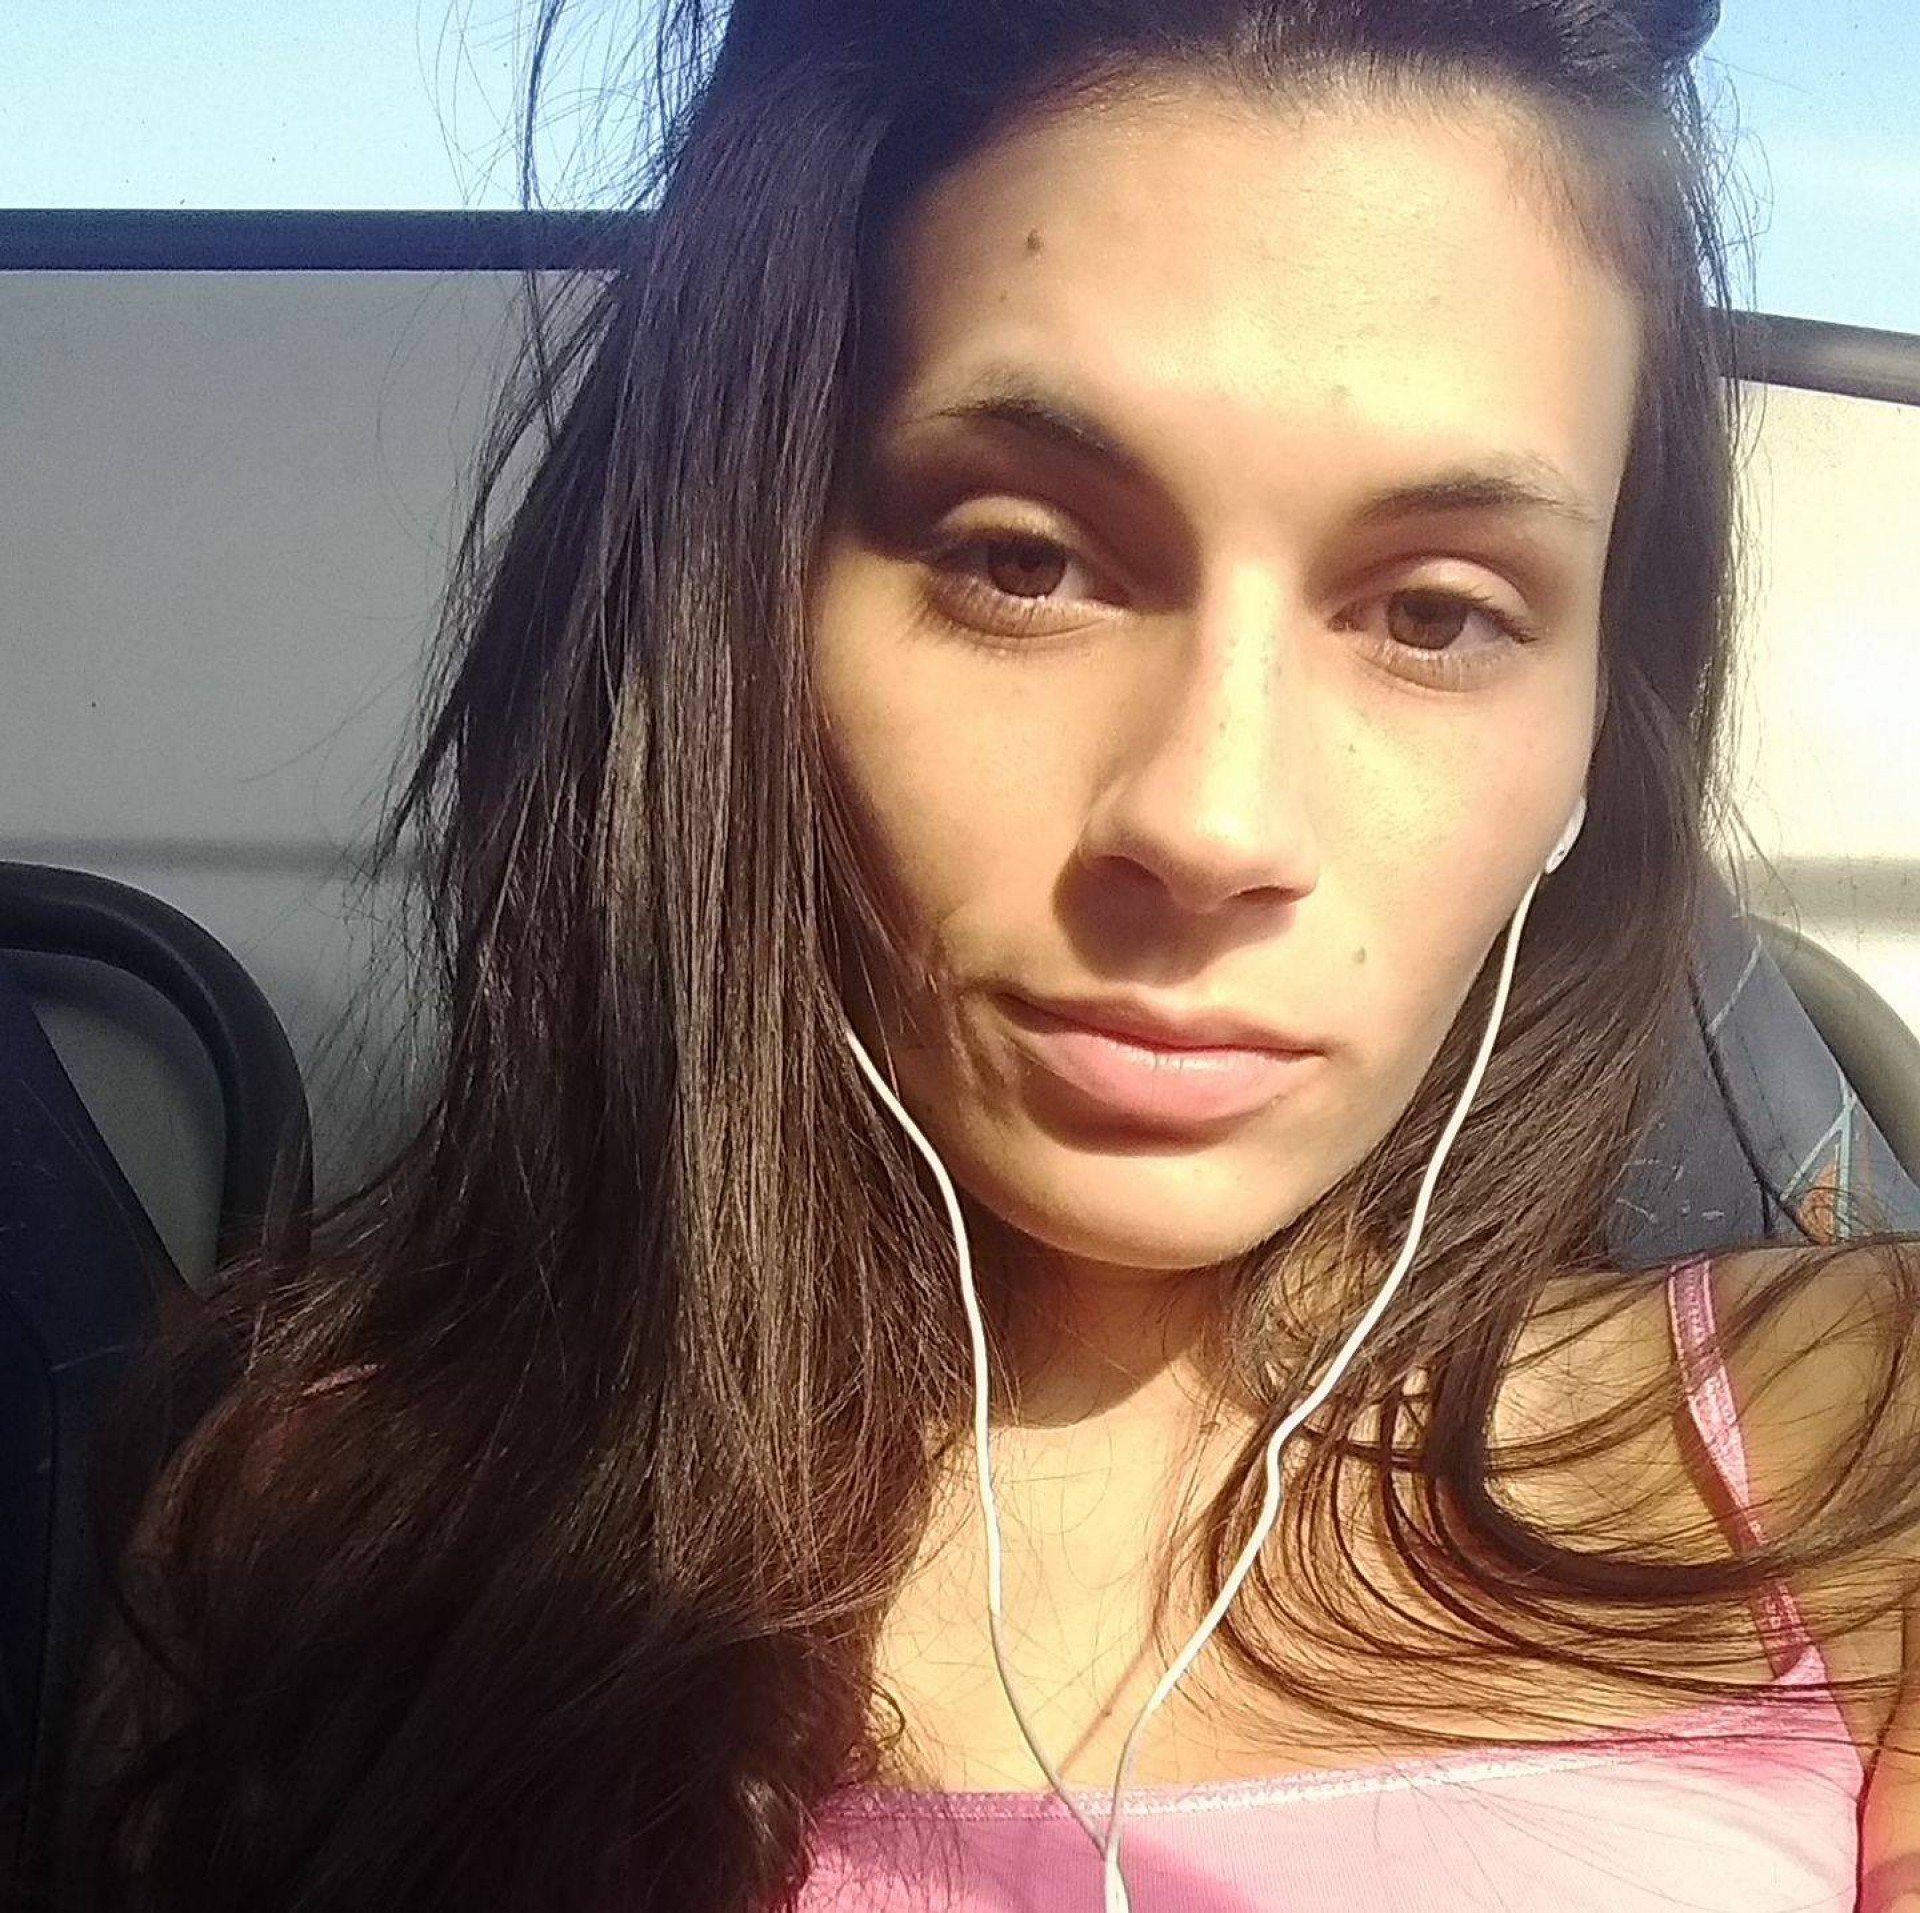 Carolina Sobreira Ardente, 27 anos, era estudante de medicina da UFRJ - Reprodução/Facebook